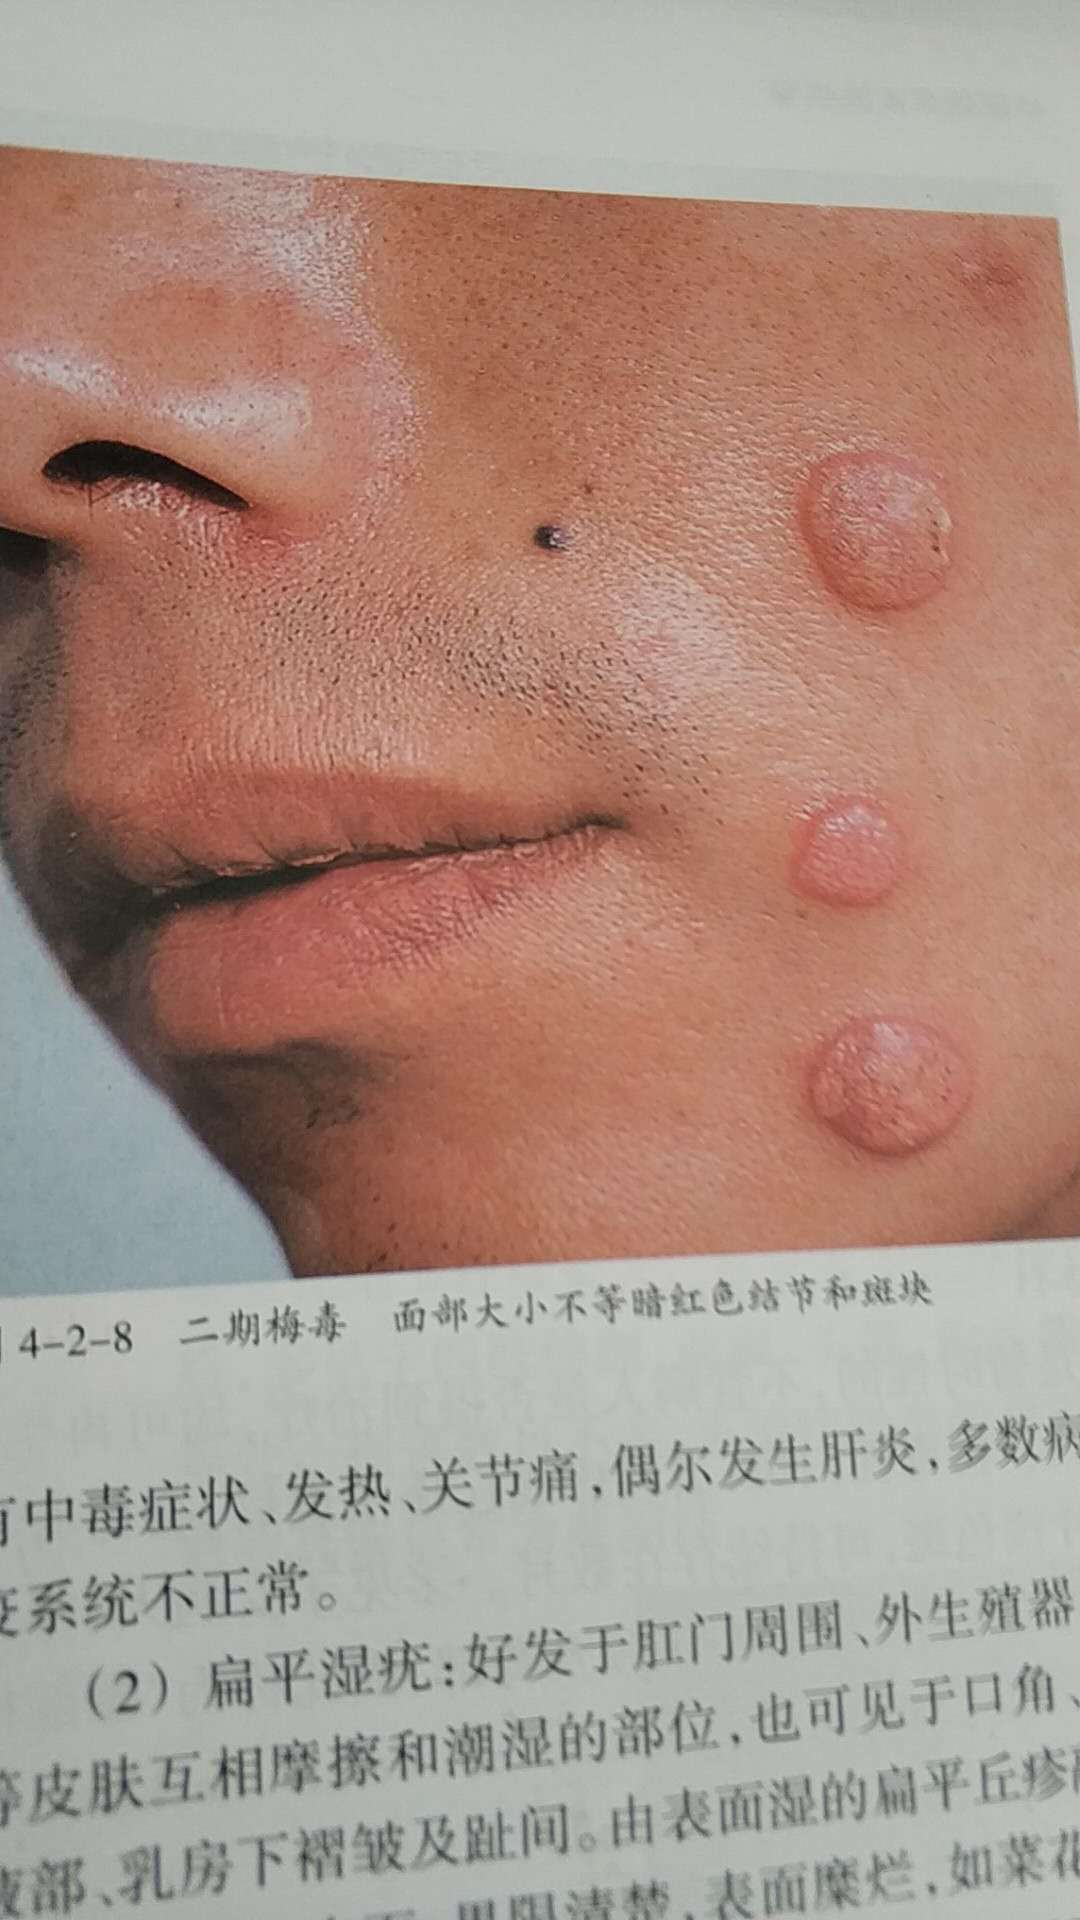 二期梅毒疹